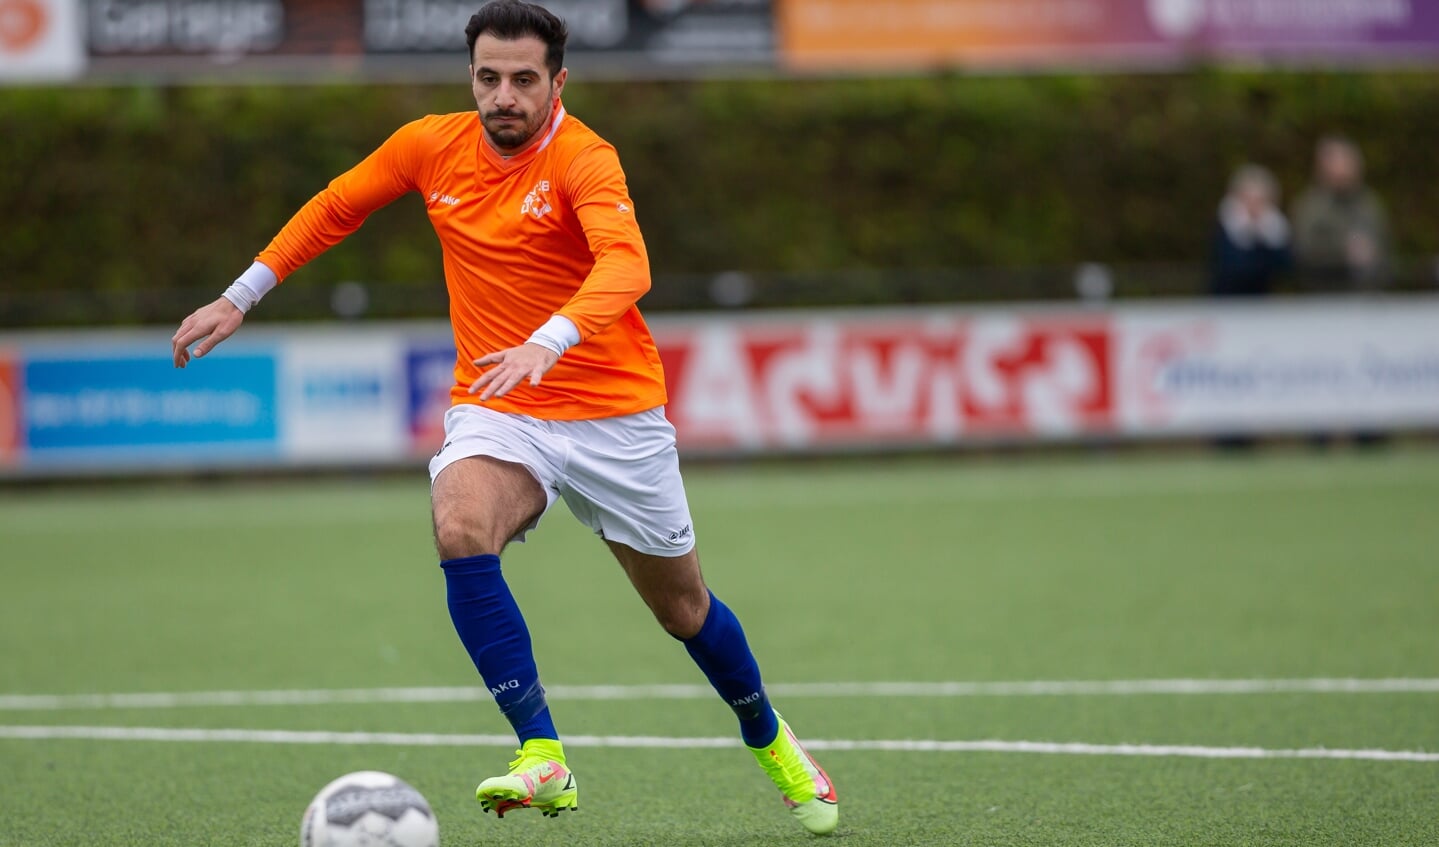 Özhan Kardag is de man van de wedstrijd tegen VSW met twee goals en een assist.